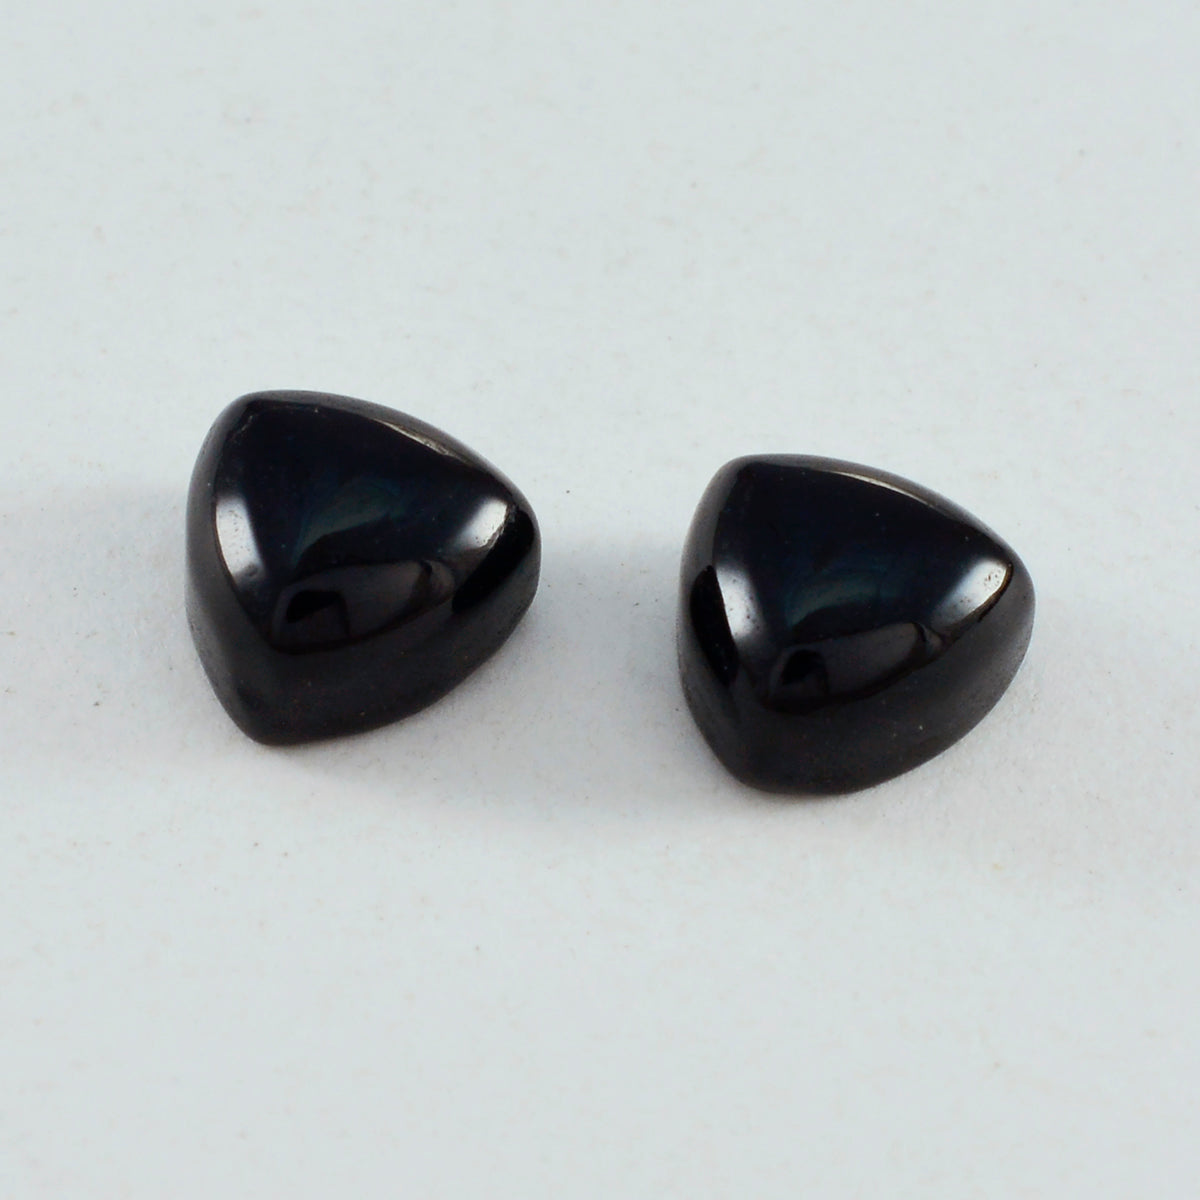 Riyogems 1PC Black Onyx Cabochon 10x10 mm Trillion Shape A+1 Quality Gemstone